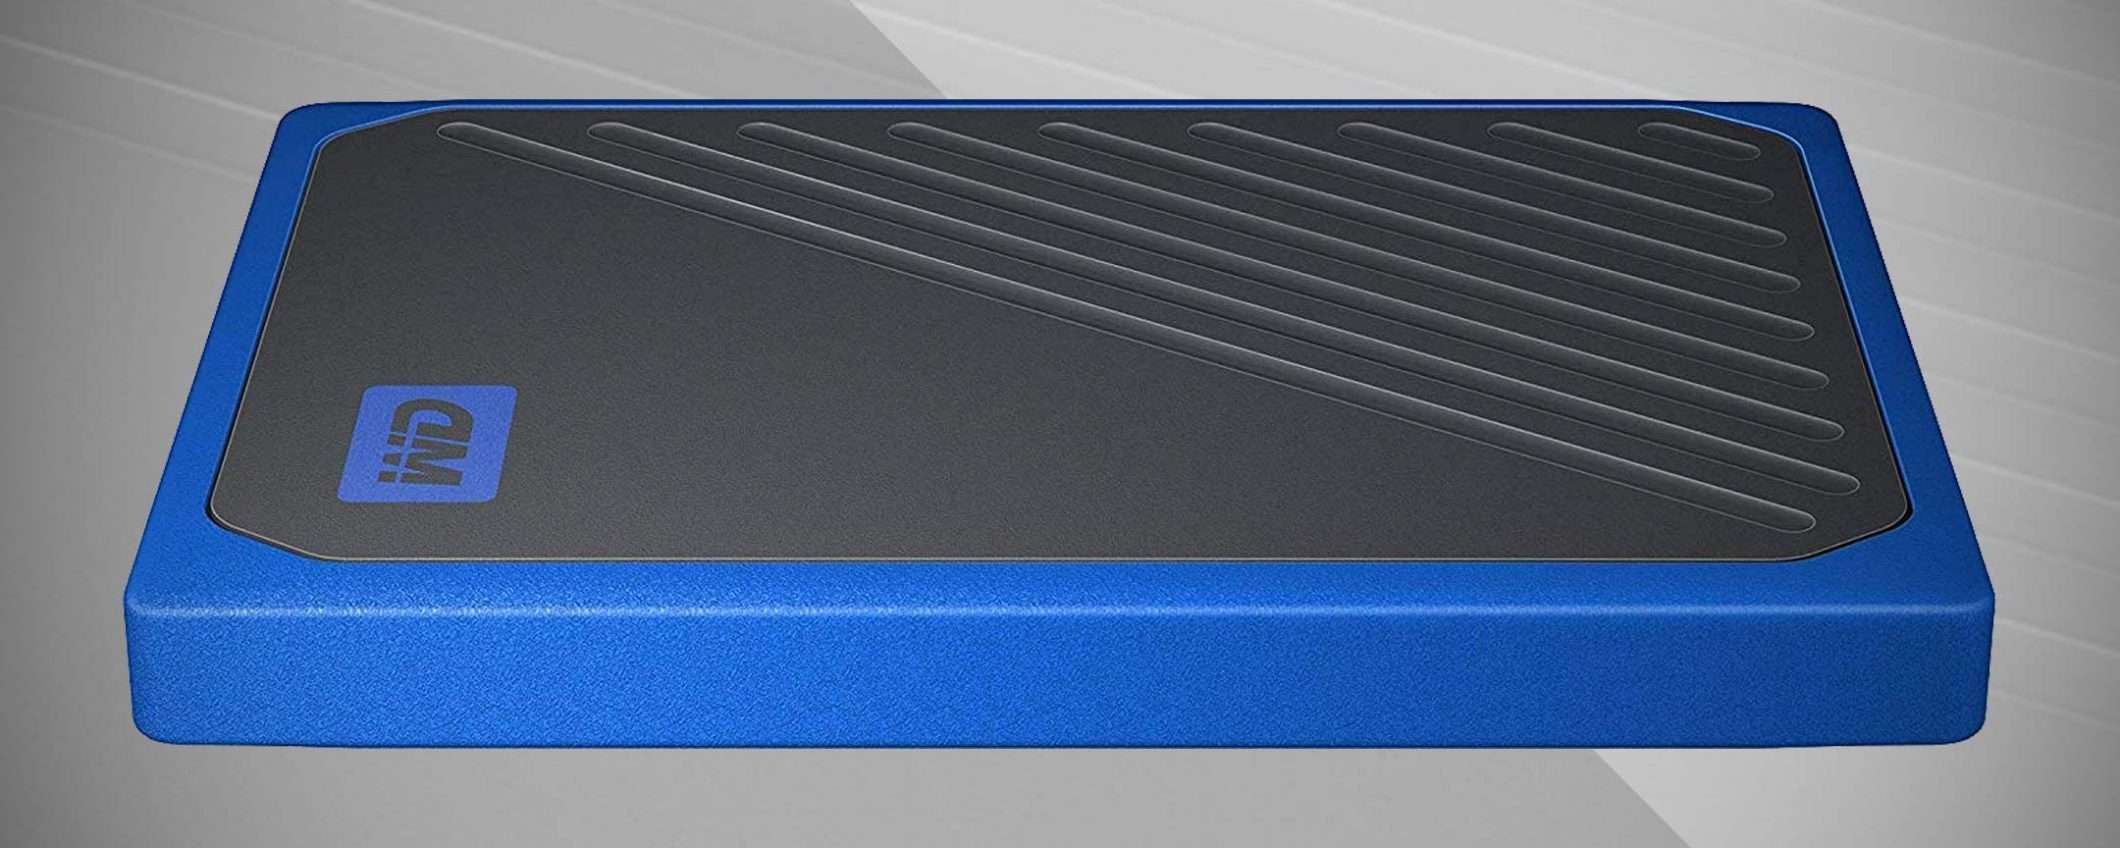 Black Friday: SSD portatile WD da 500 GB in sconto